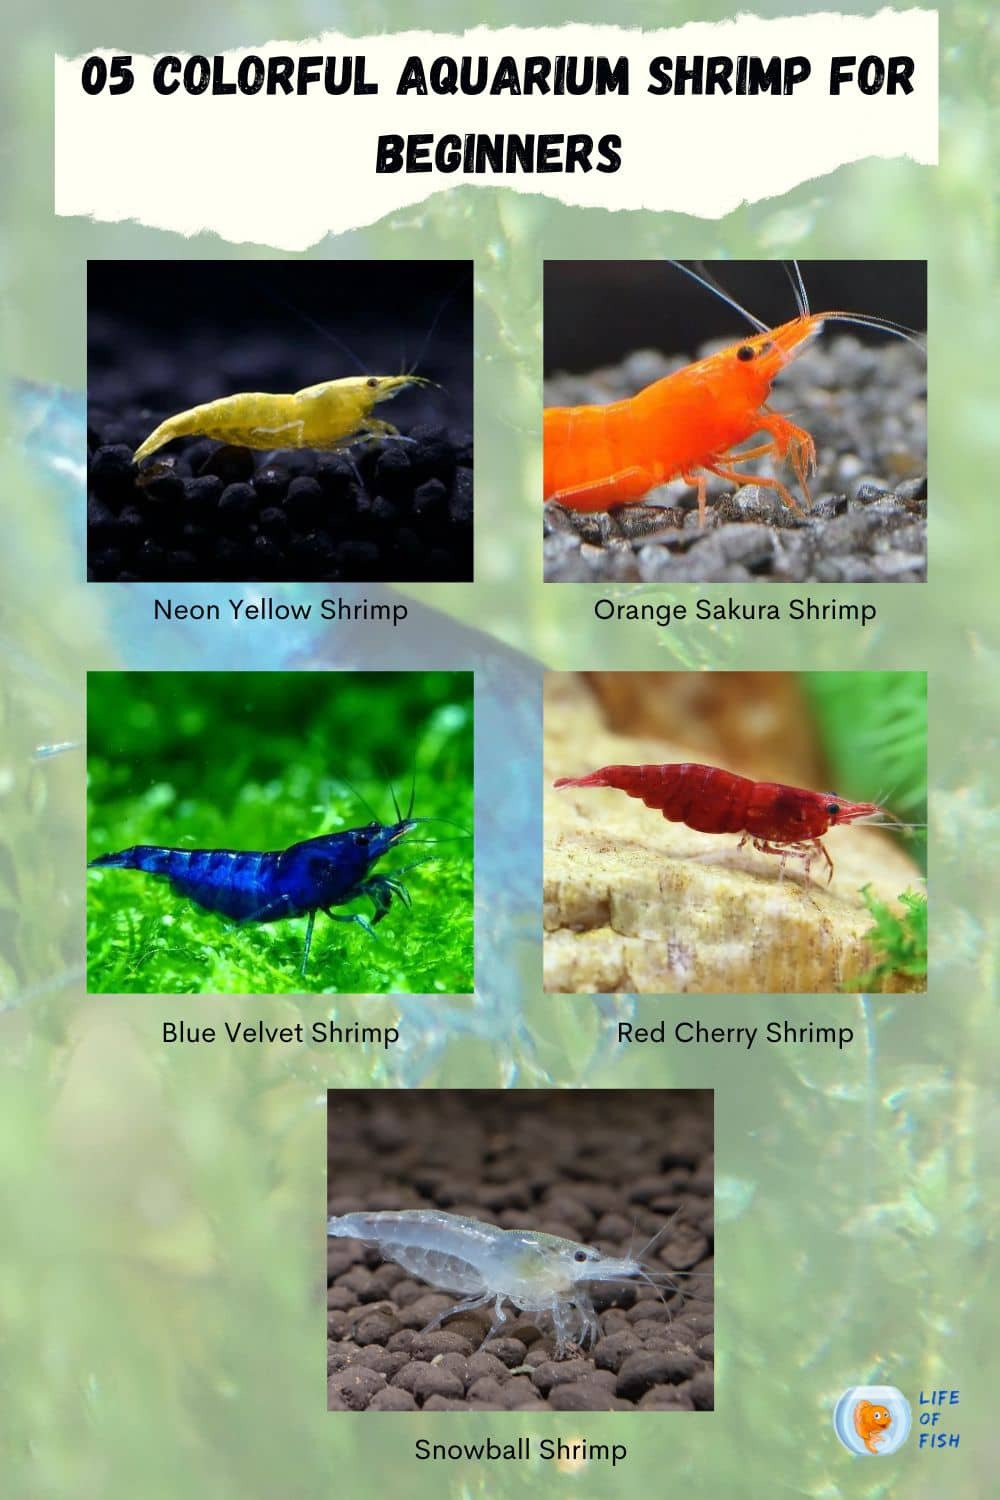 Aquarium Shrimp for Beginners infographic